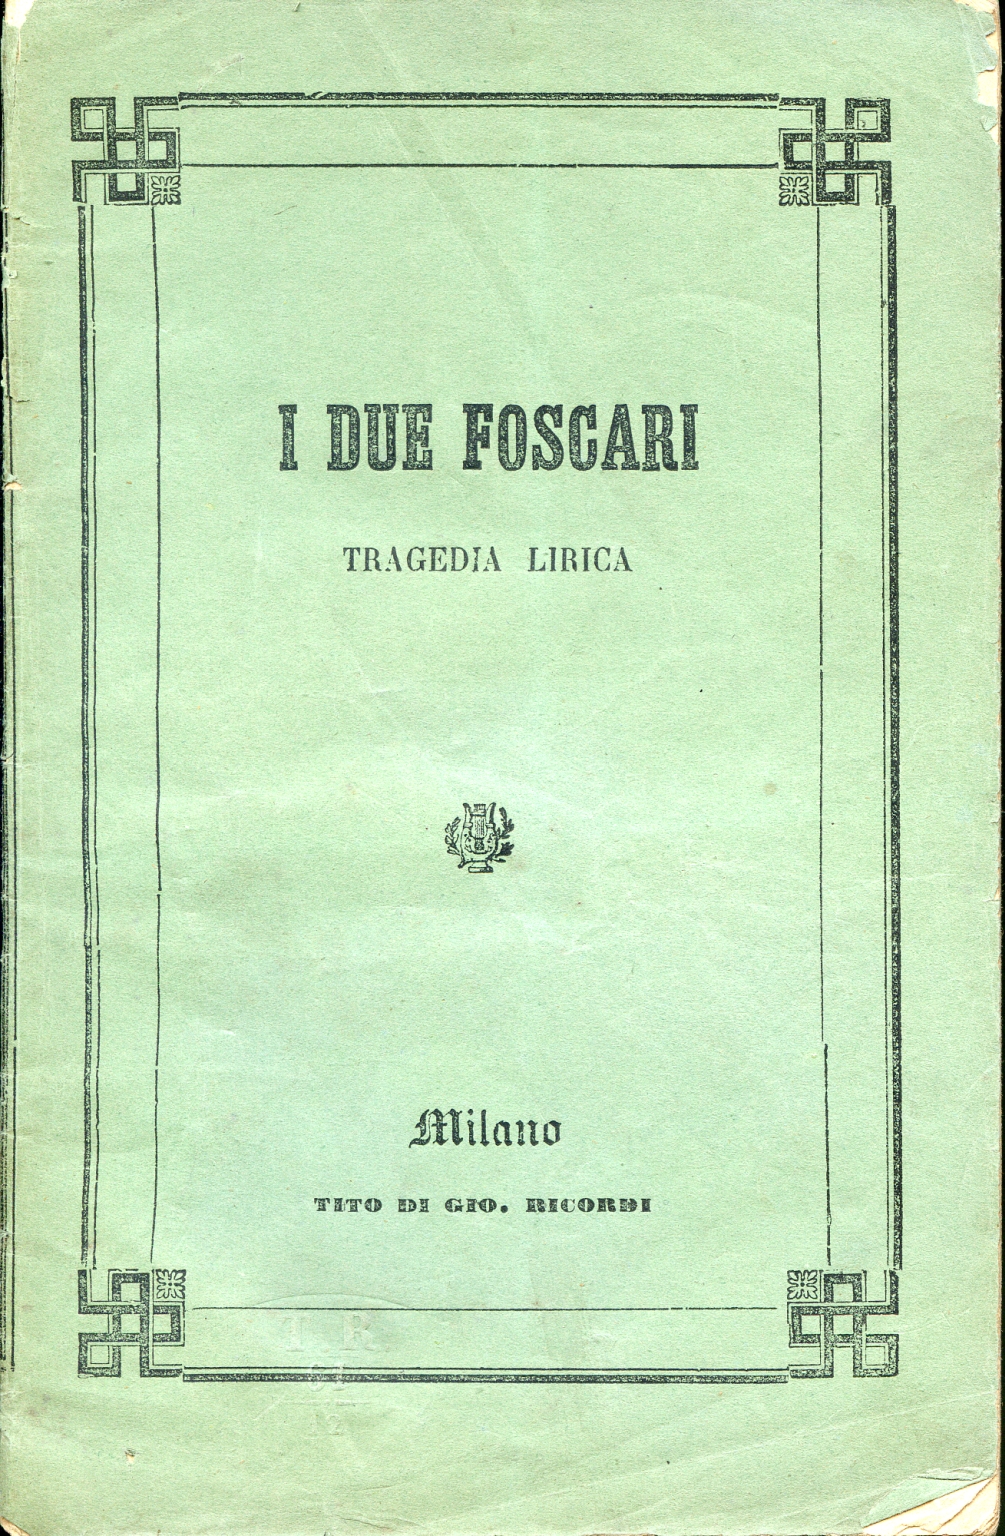 Die beiden Foscari, Giuseppe Verdi